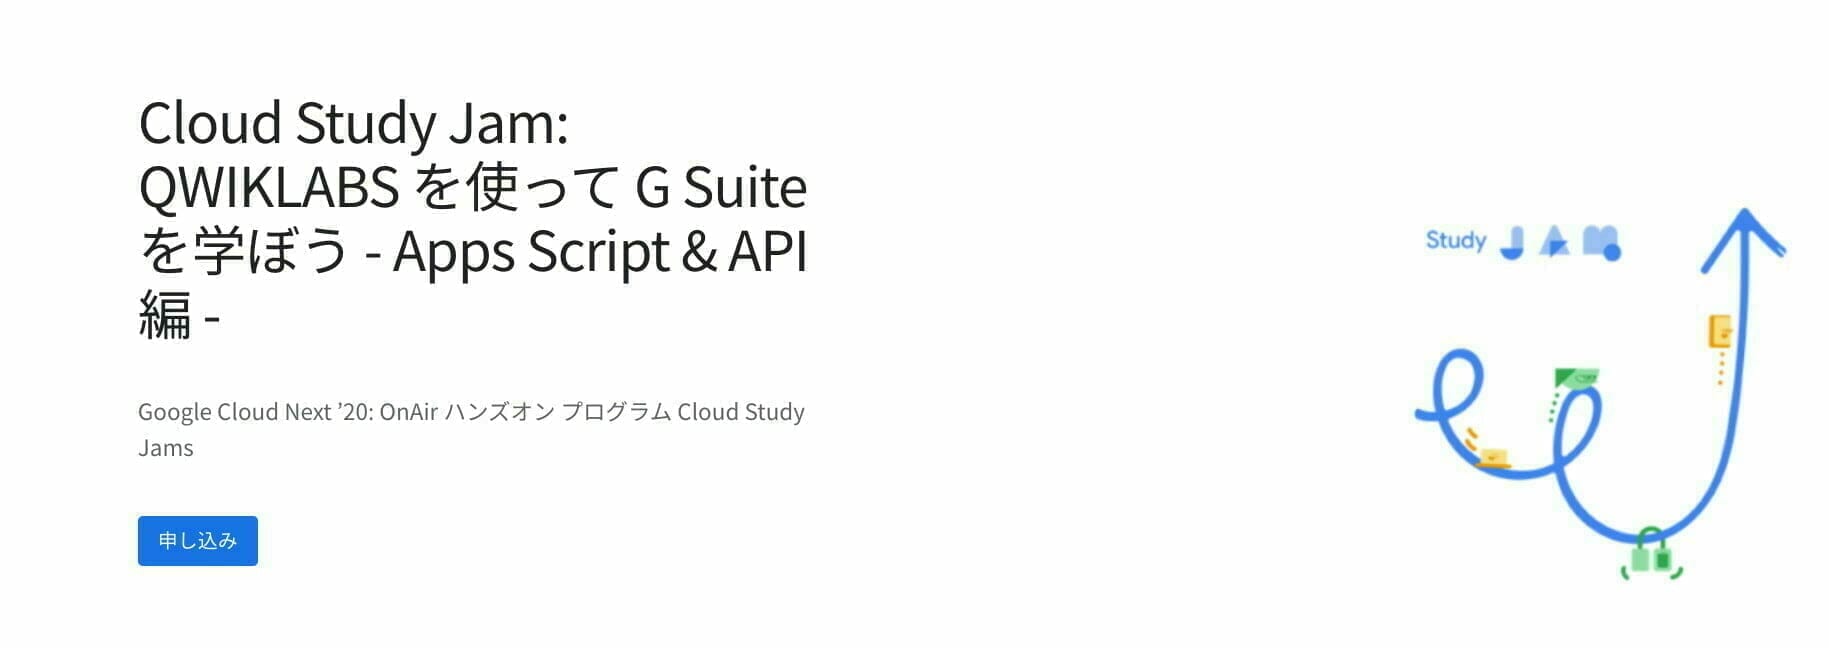 Cloud Study Jam: QWIKLABS を使って G Suite を学ぼう - Apps Script & API 編 -